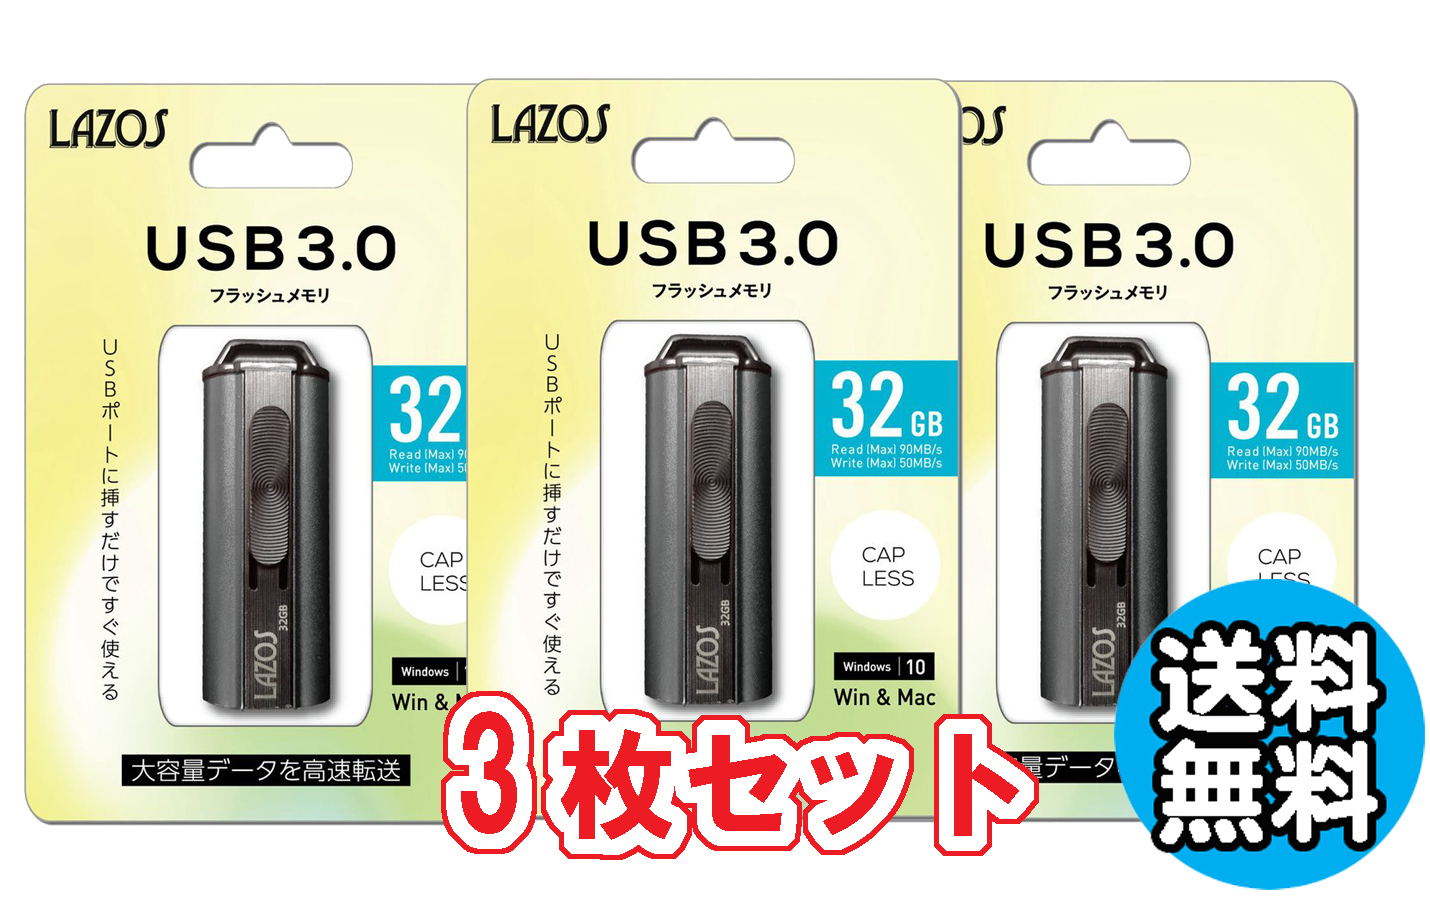 3個セット 送料無料 USBメモリー 32GB フラッシュメモリー おすすめ ゆうパケット発送 リーダーメディアテクノ ラソス Lazos USBメモリ 32GB USB3.0対応 L-US32-3.0